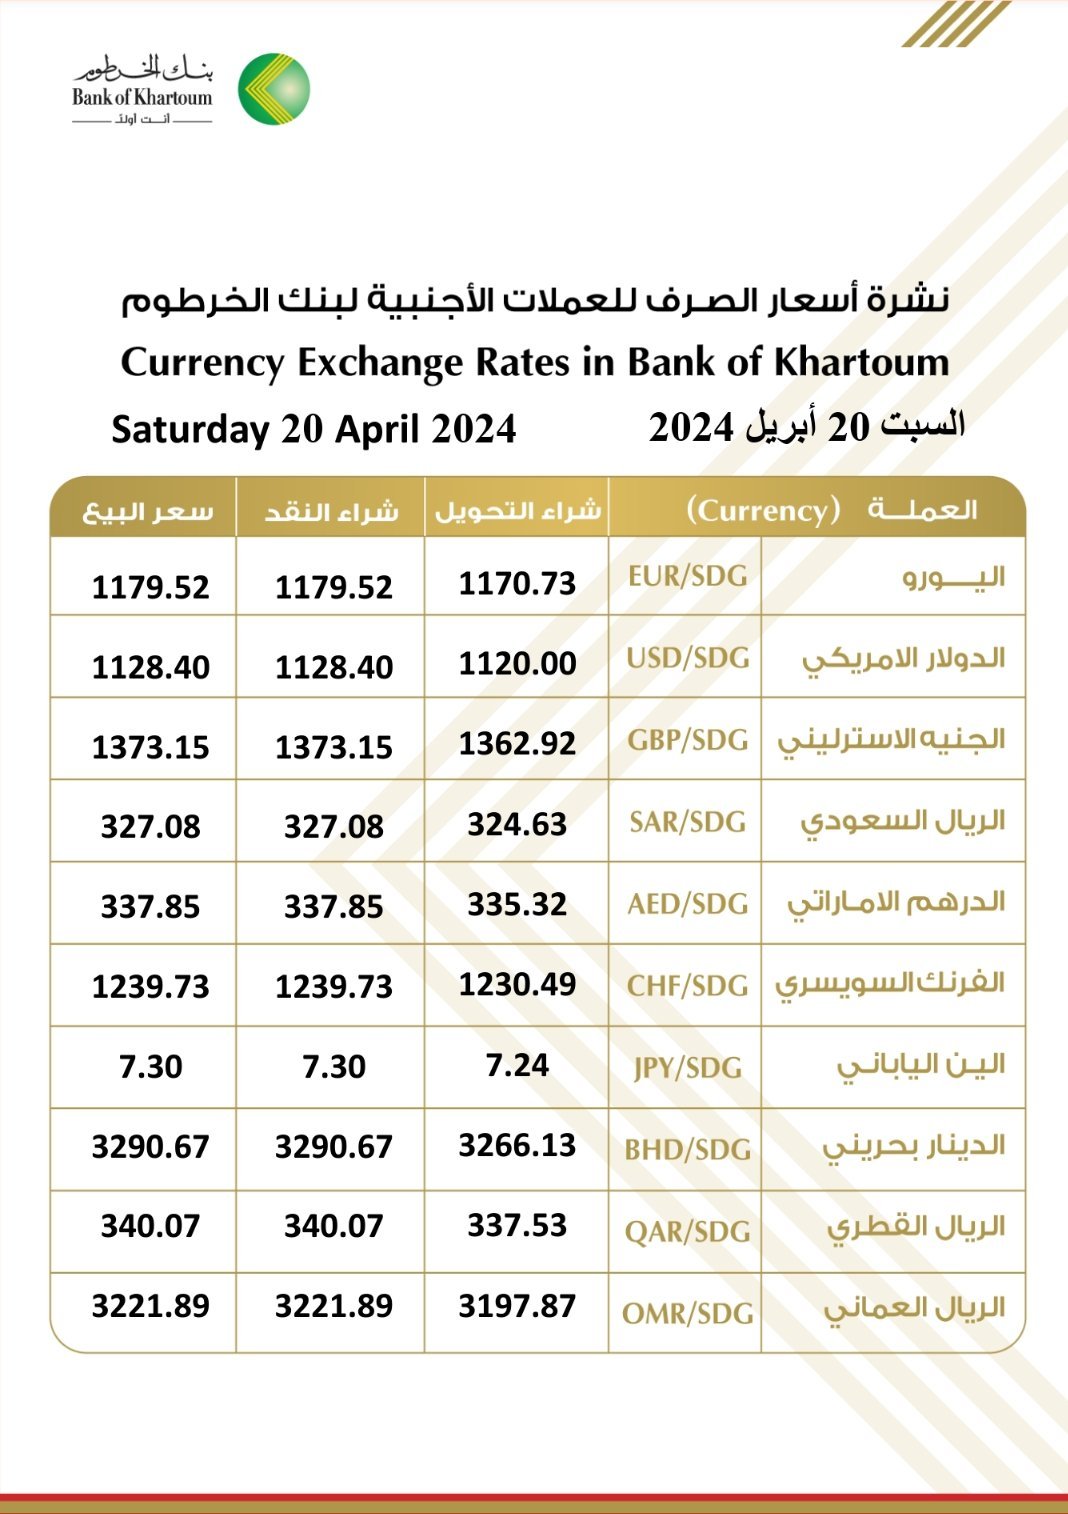 أسعار صرف الدولار والعملات الأجنبية من بنك الخرطوم اليوم السبت 20 أبريل 2024